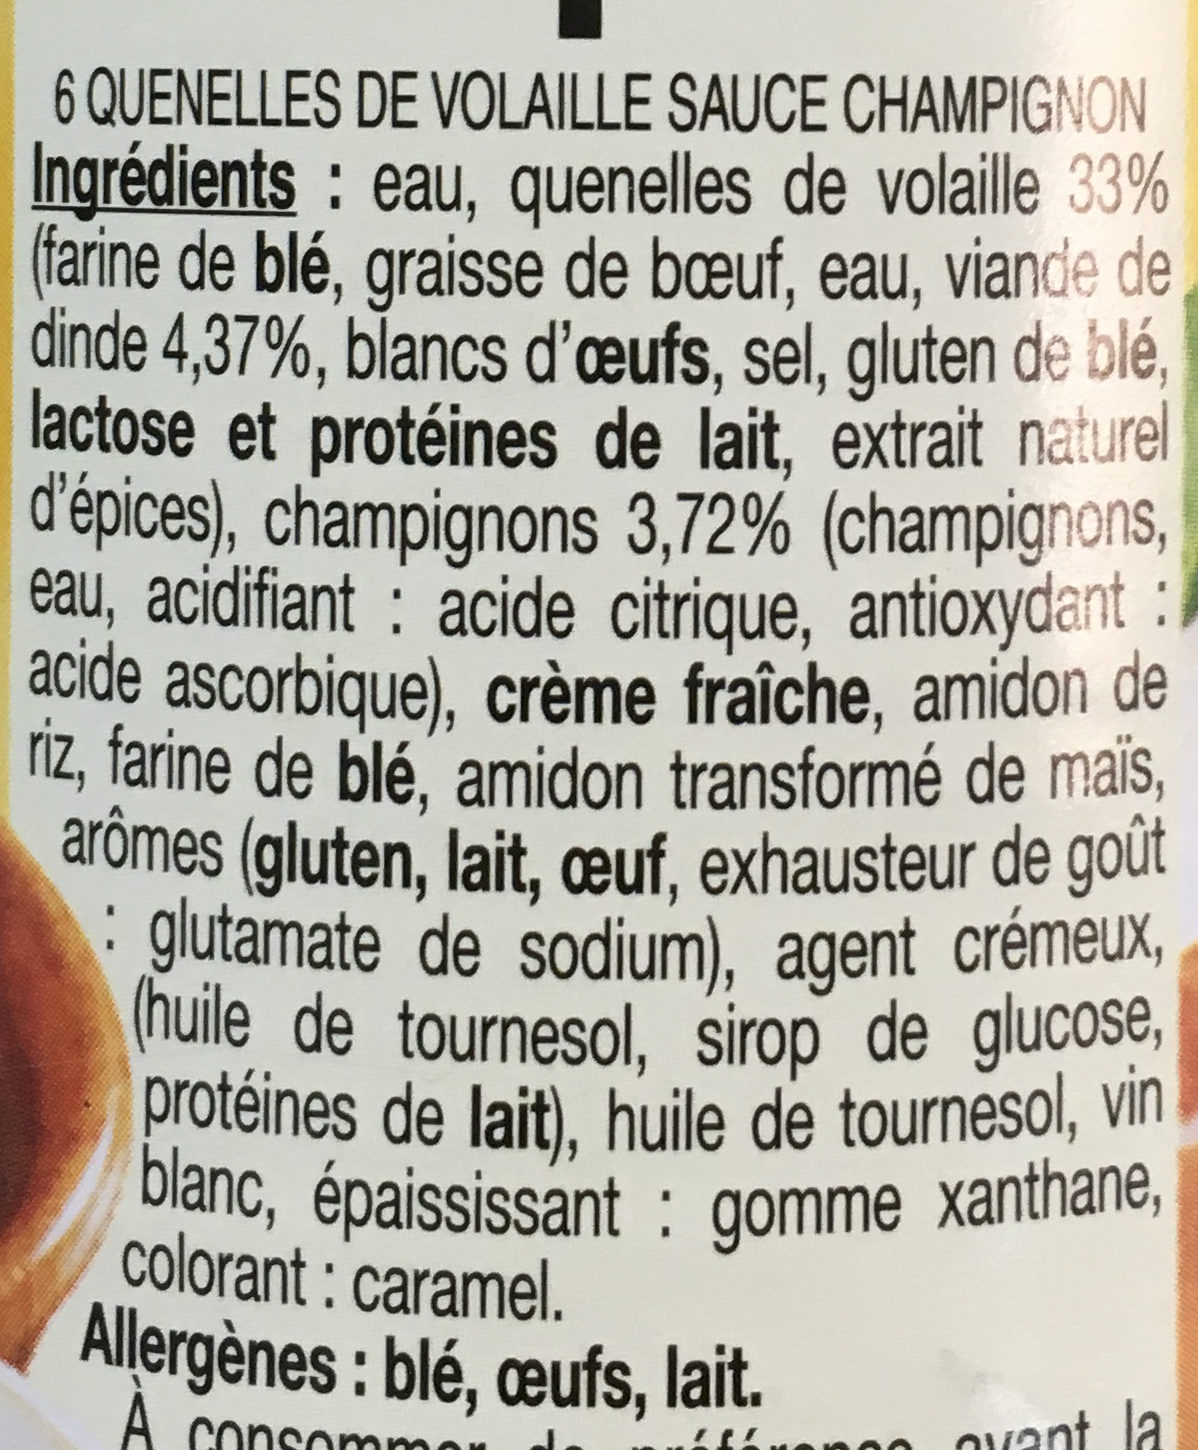 6 quenelles de volaille sauce champignon - Ingredients - fr